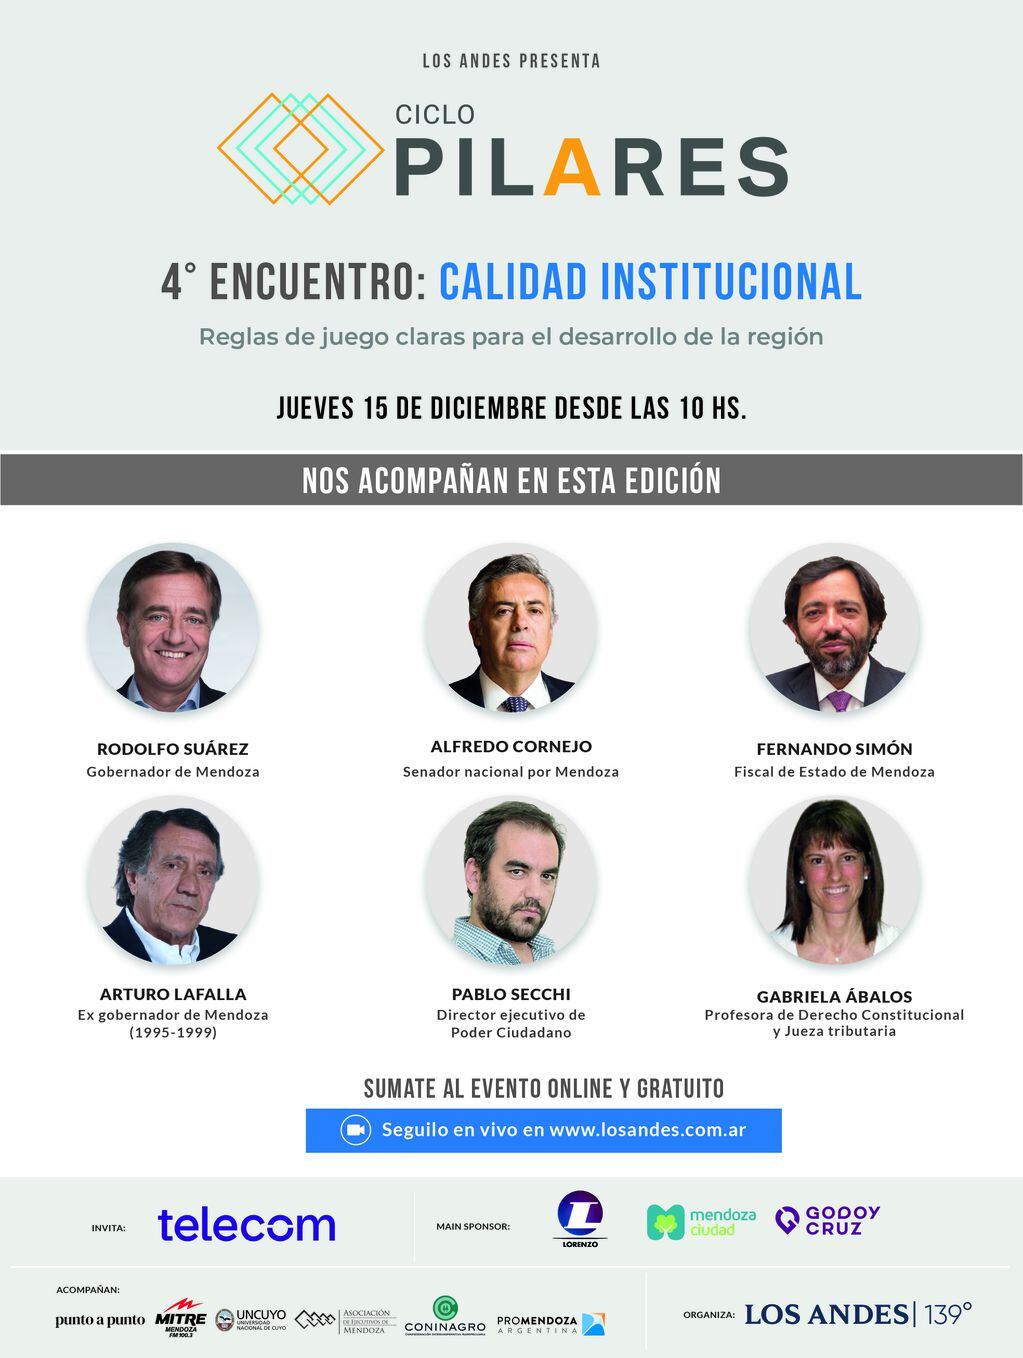 El próximo encuentro del ciclo Pilares será sobre Calidad Institucional, el jueves 15 de diciembre.